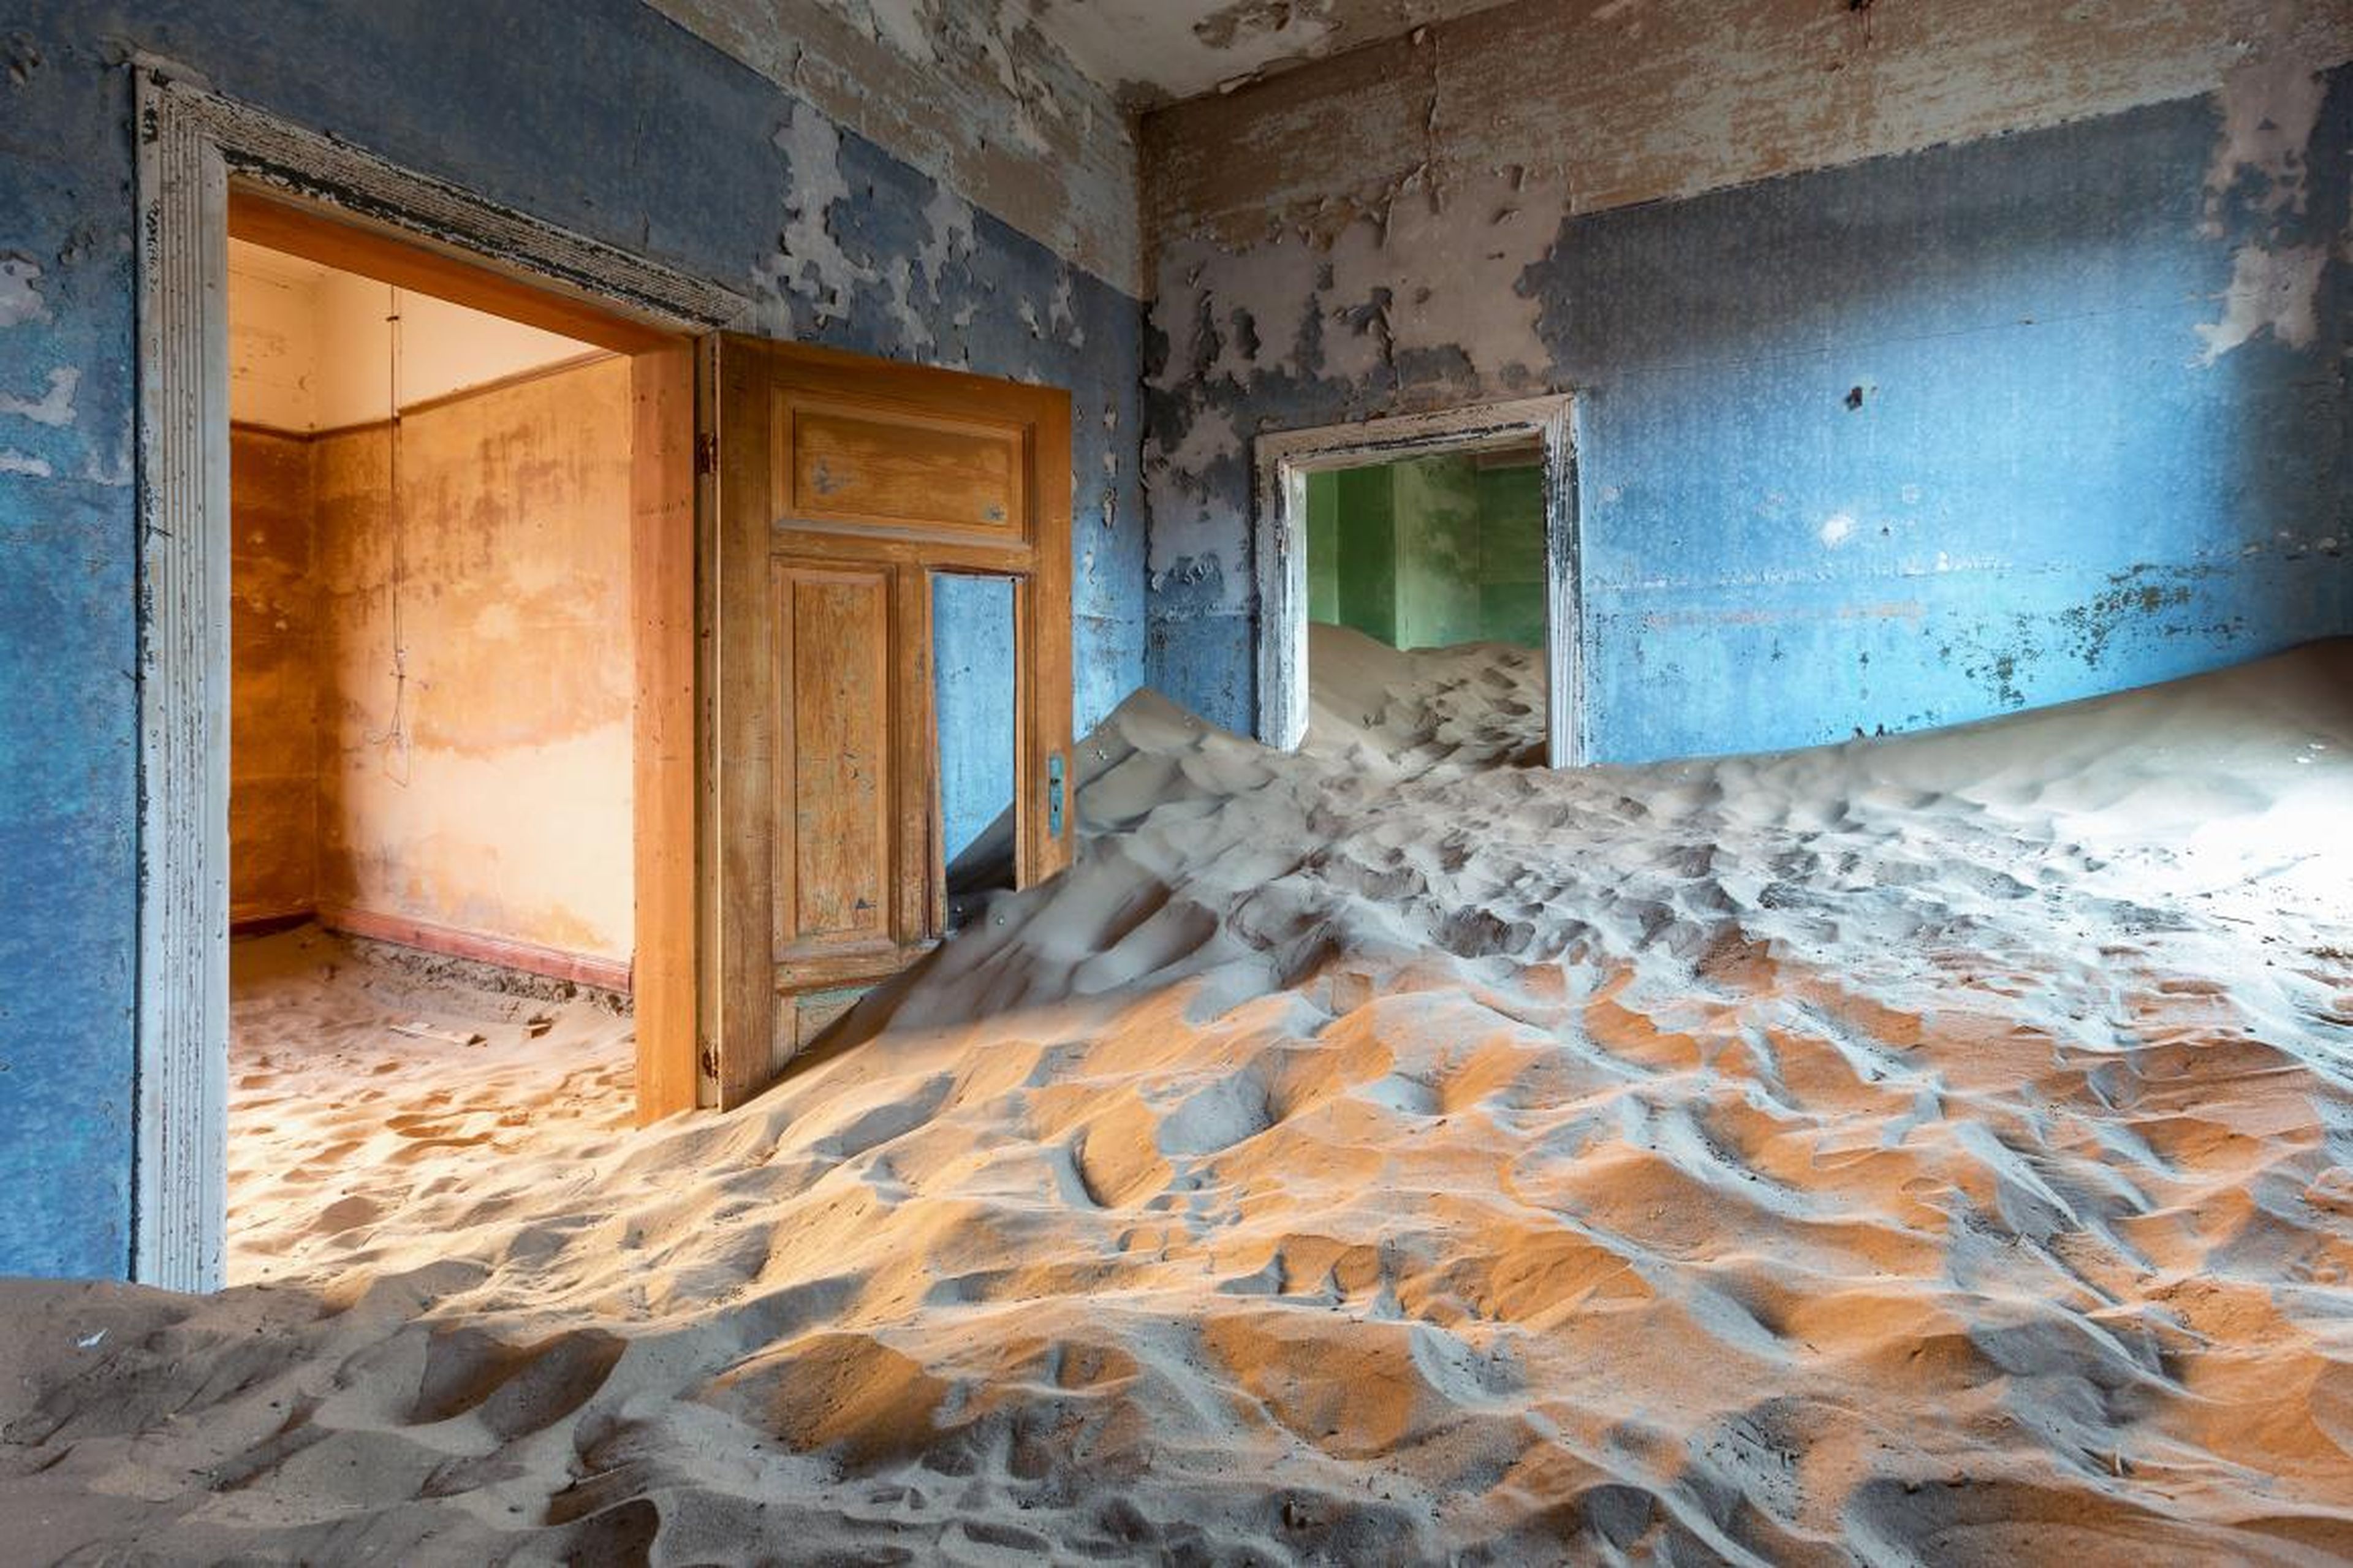 A building invaded by sand dunes in Kolmanskop.